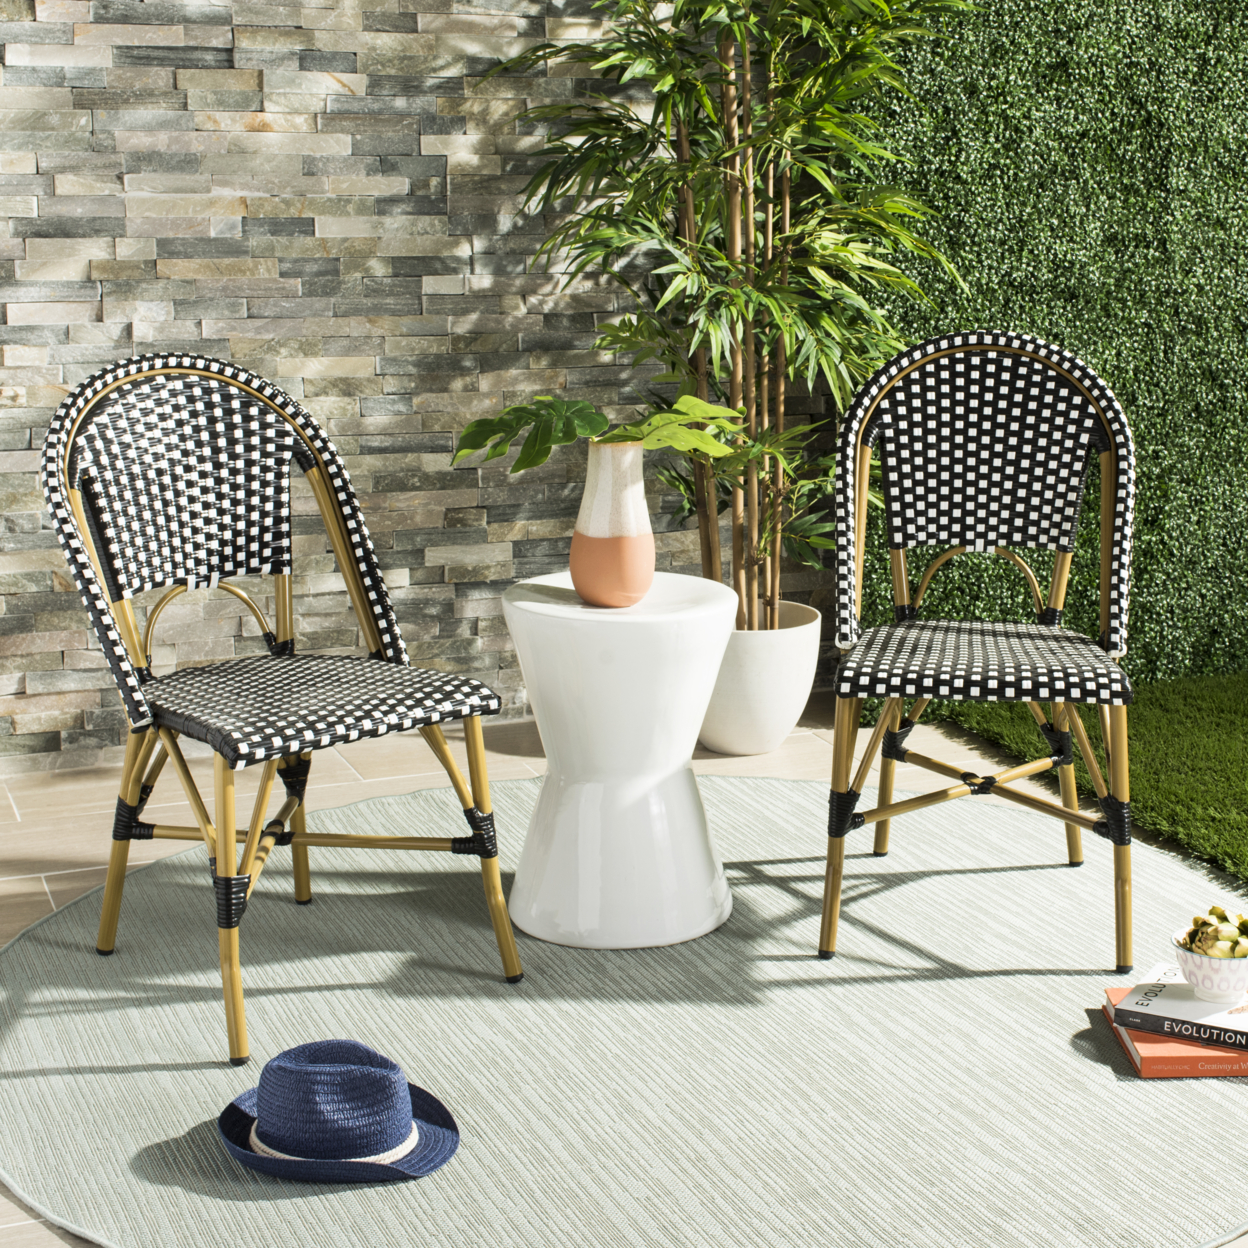 SAFAVIEH Outdoor Collection Salcha Bistro Side Chair Black/White/Light Brown FOX5210H-SET2